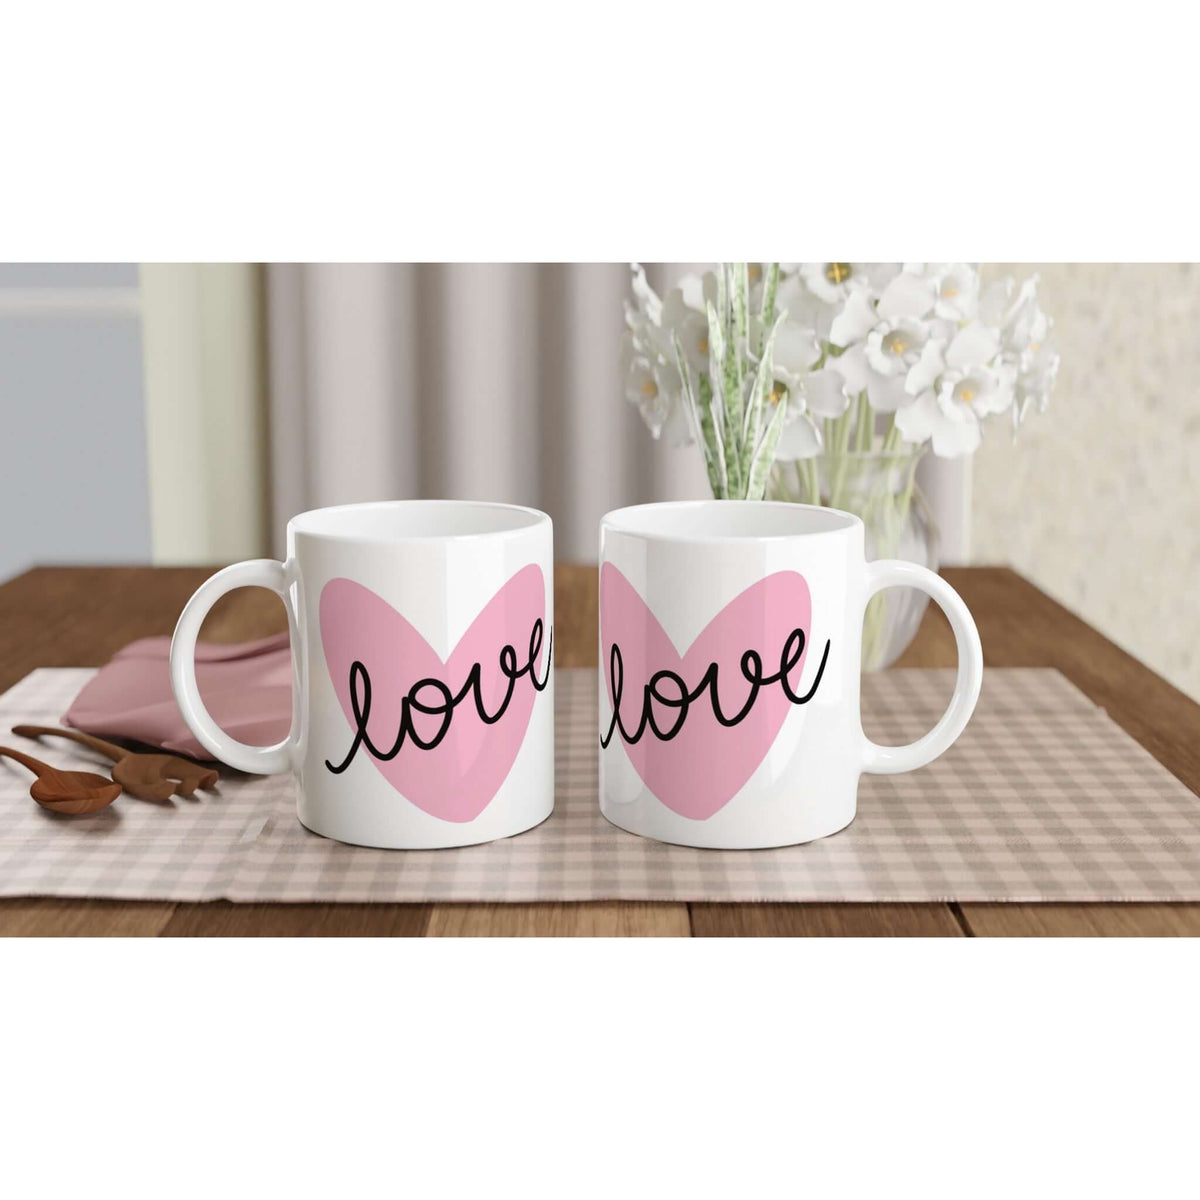 Love in a pink heart mug